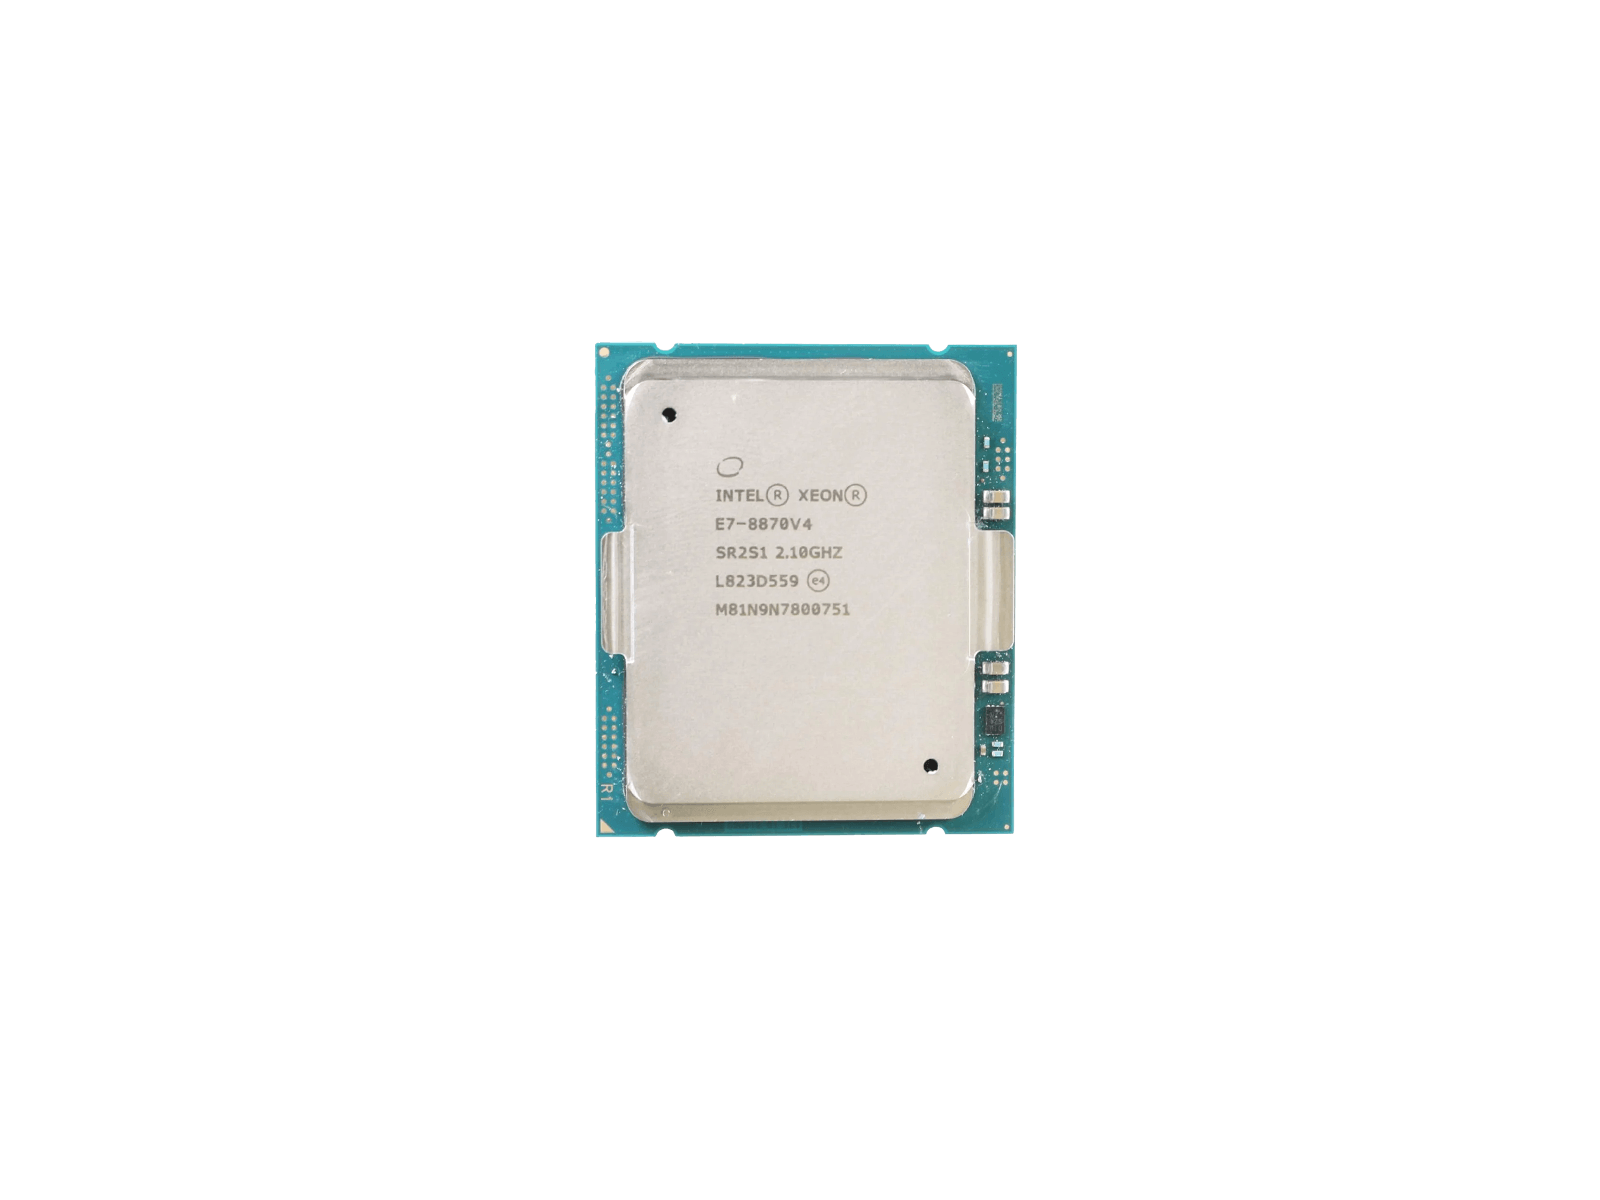 Intel Xeon E7-8870 v4 Broadwell 20-Core 2.1GHz 50MB LGA2011 Socket 140W SR2S1 Processor CPU